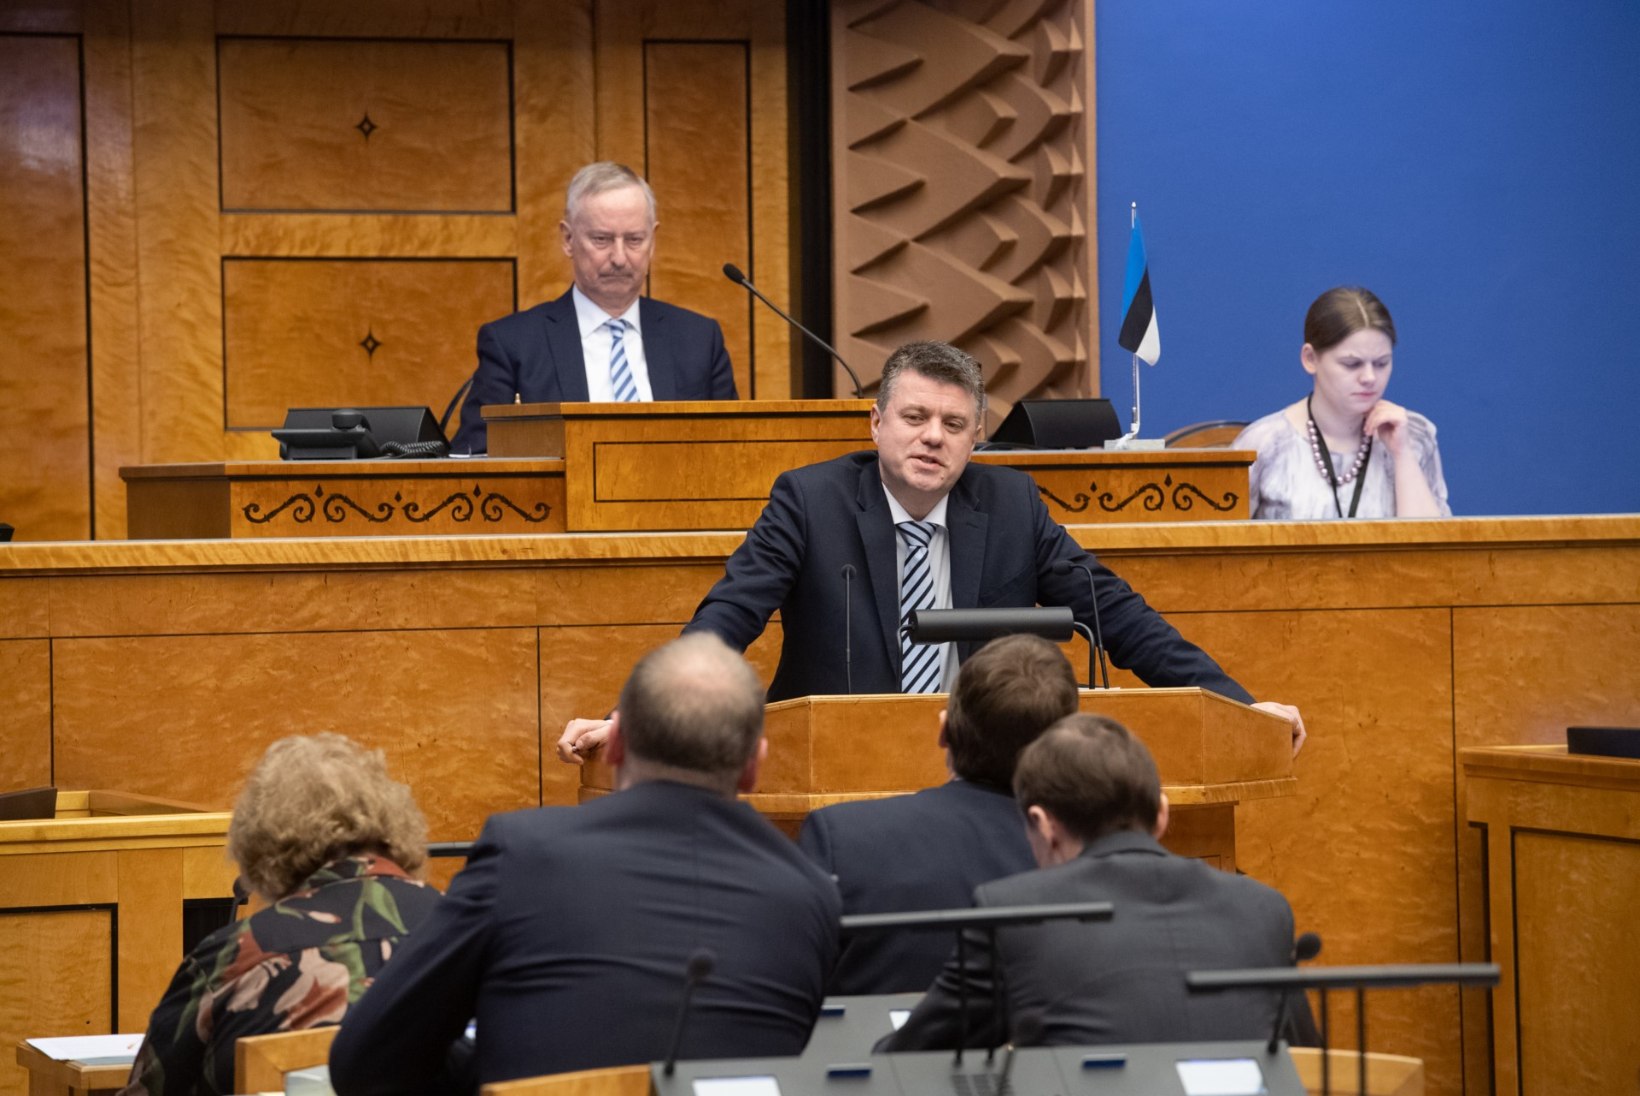 Minister Reinsalu aastakõnes: Eesti välispoliitika keskmes on meie rahvuslike huvide kaitsmine maailmas